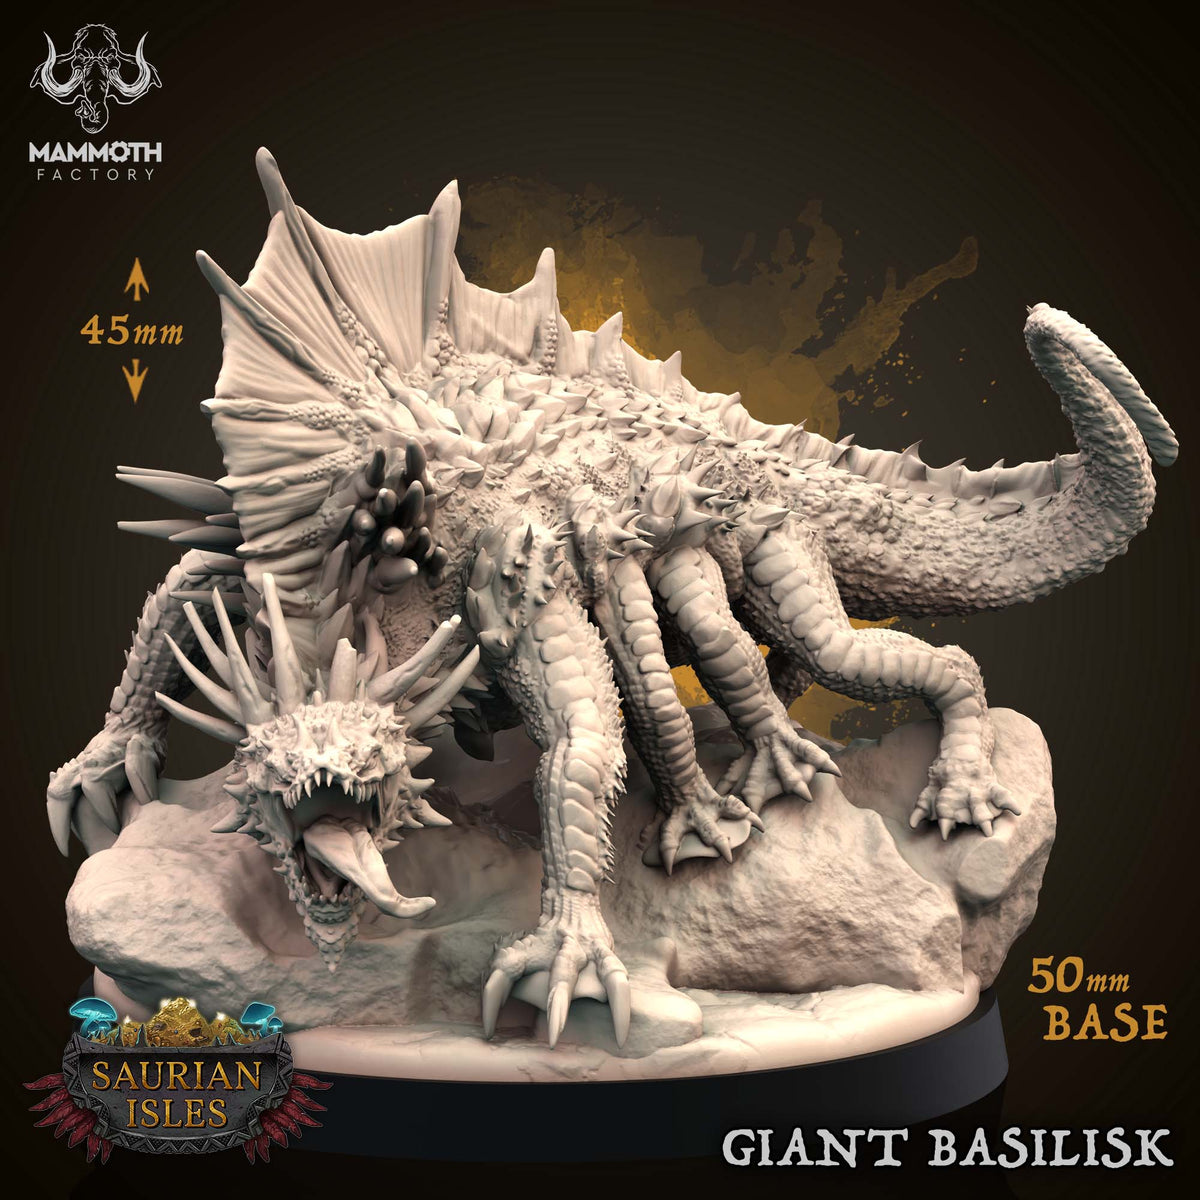 Giant Basilisk